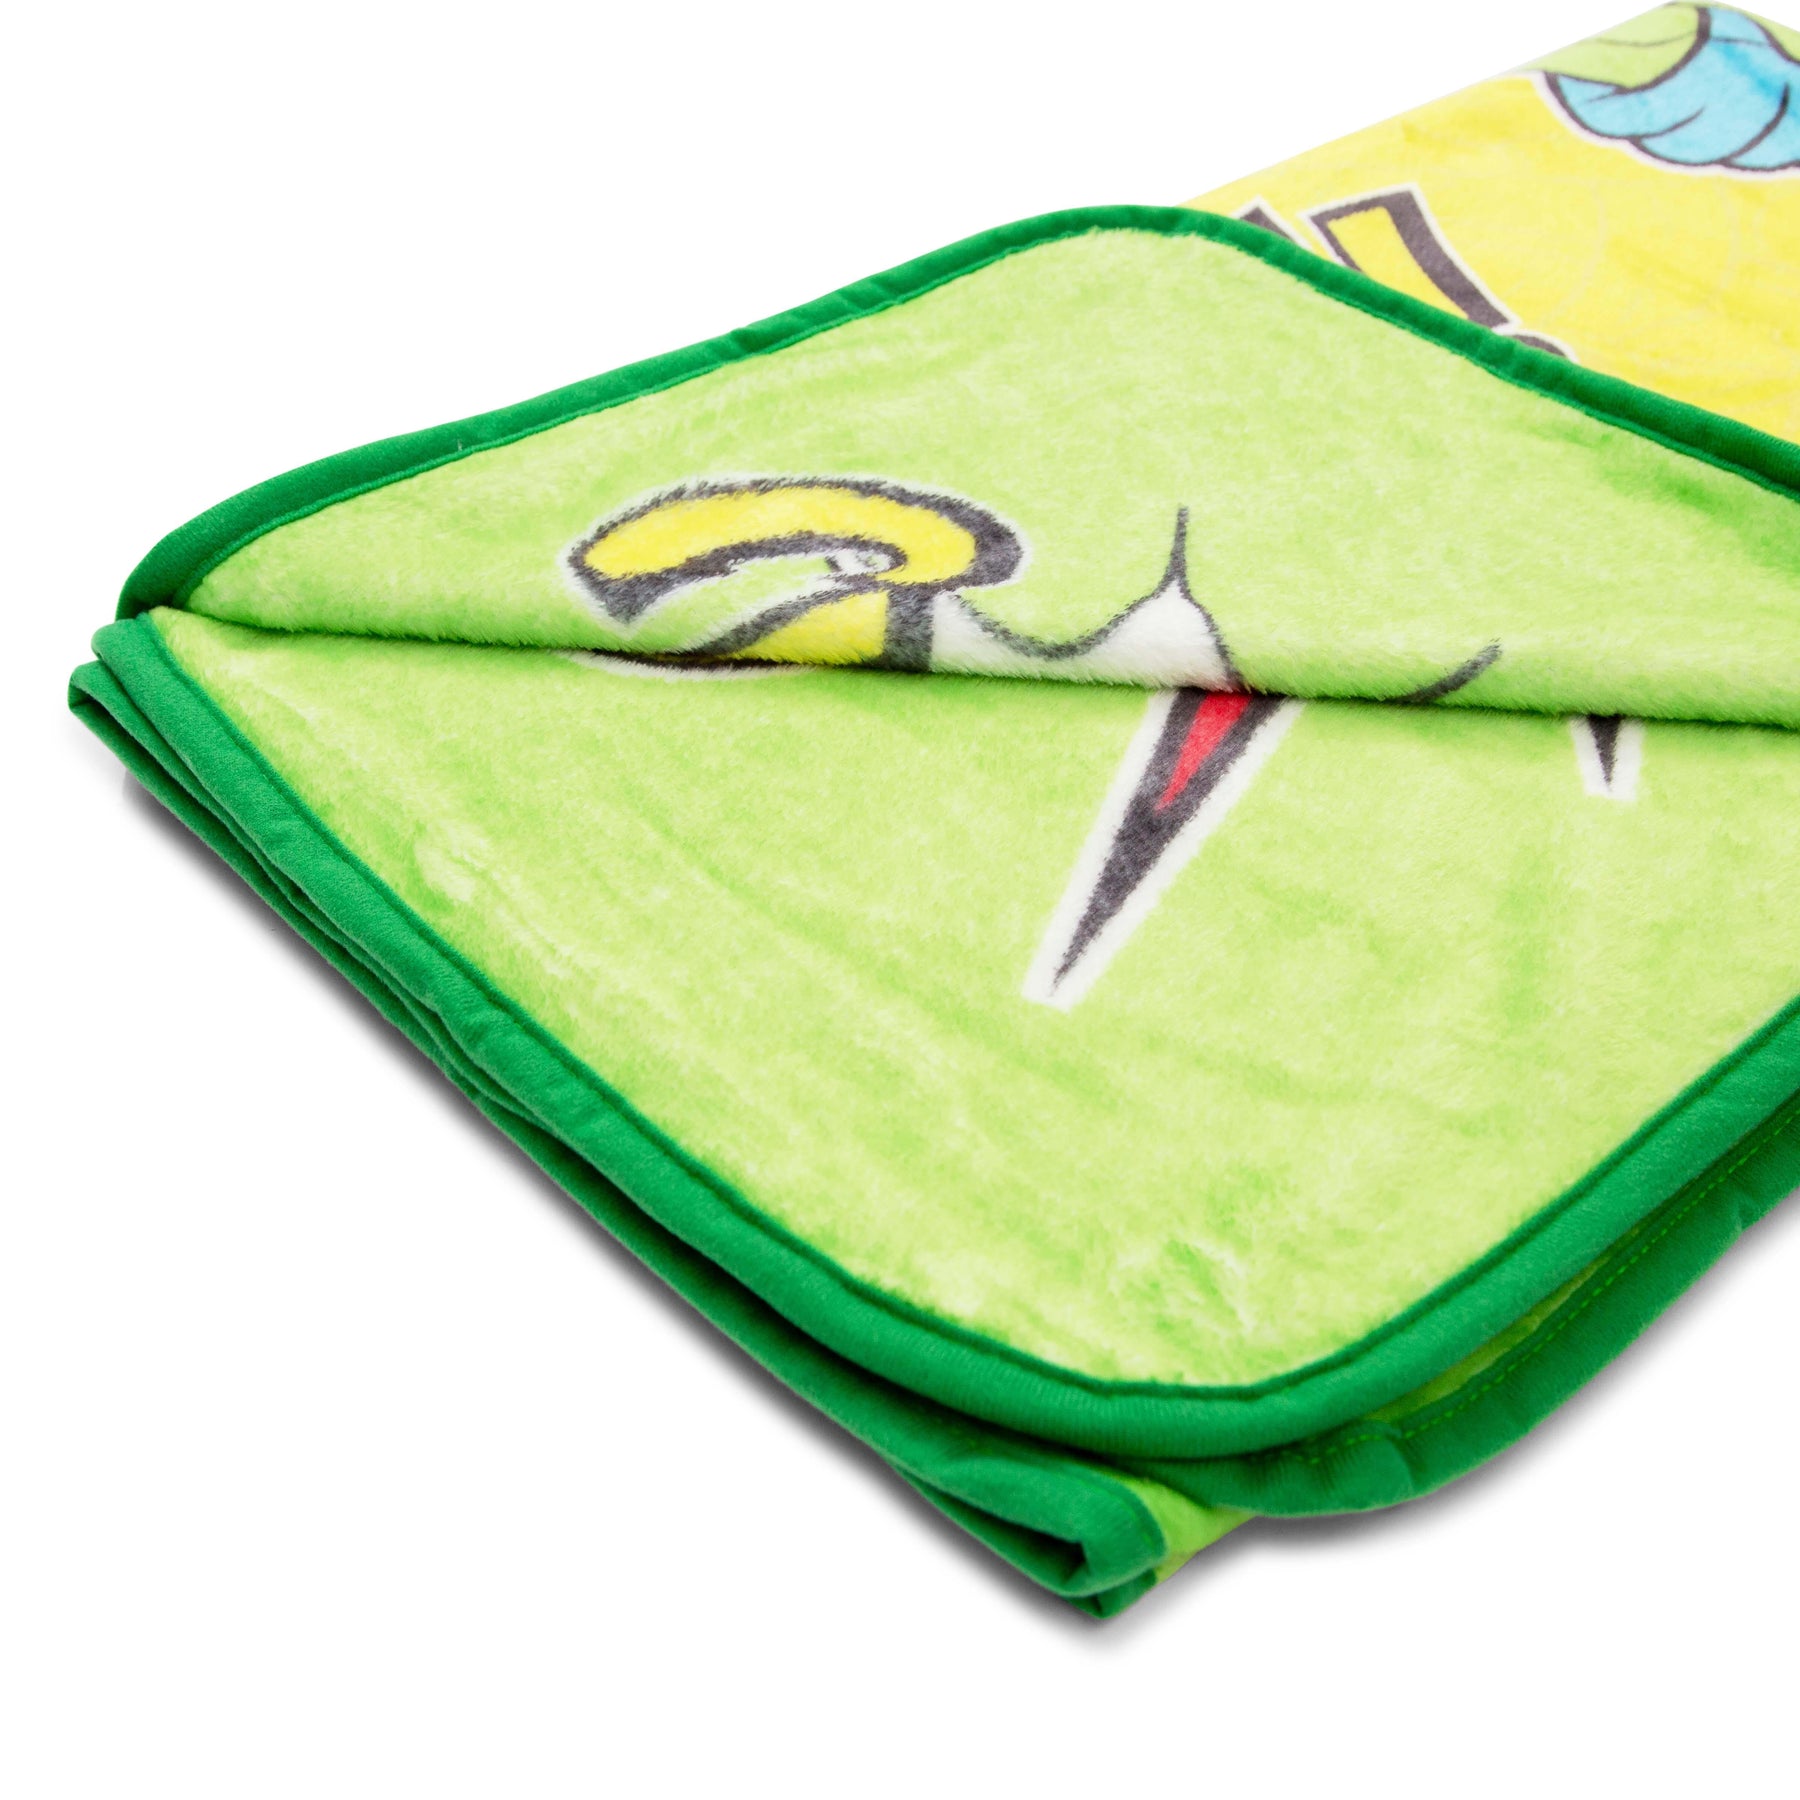 Teenage Mutant Ninja Turtles "Cowabunga" Fleece Throw Blanket | 50 x 60 Inches